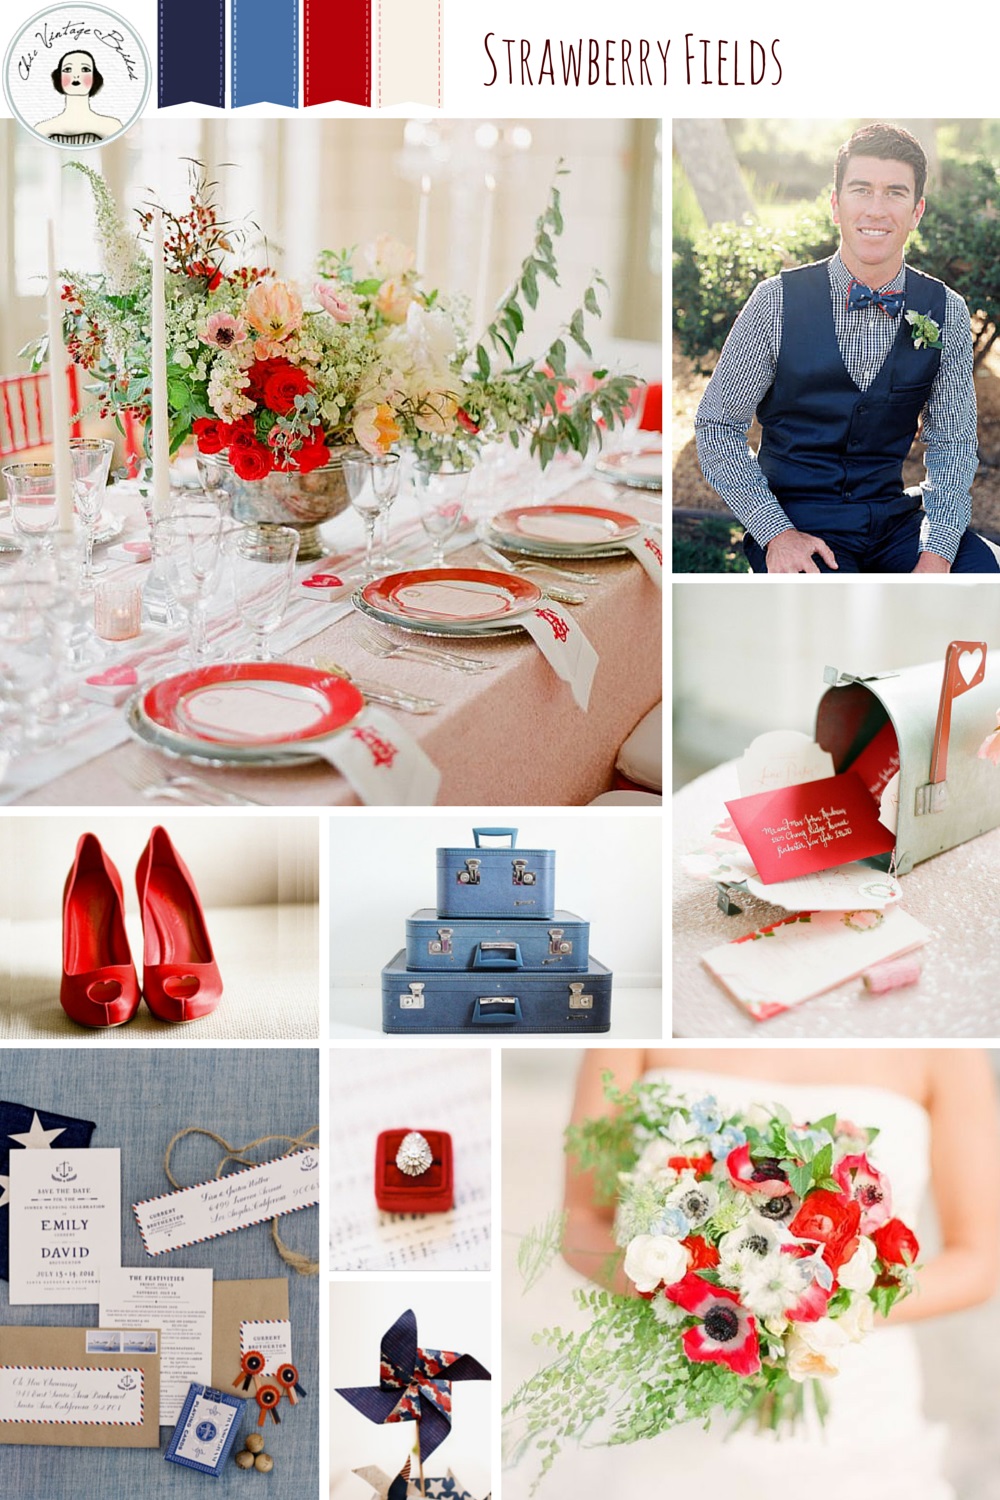 Summer Wedding ideas in red, white & blue